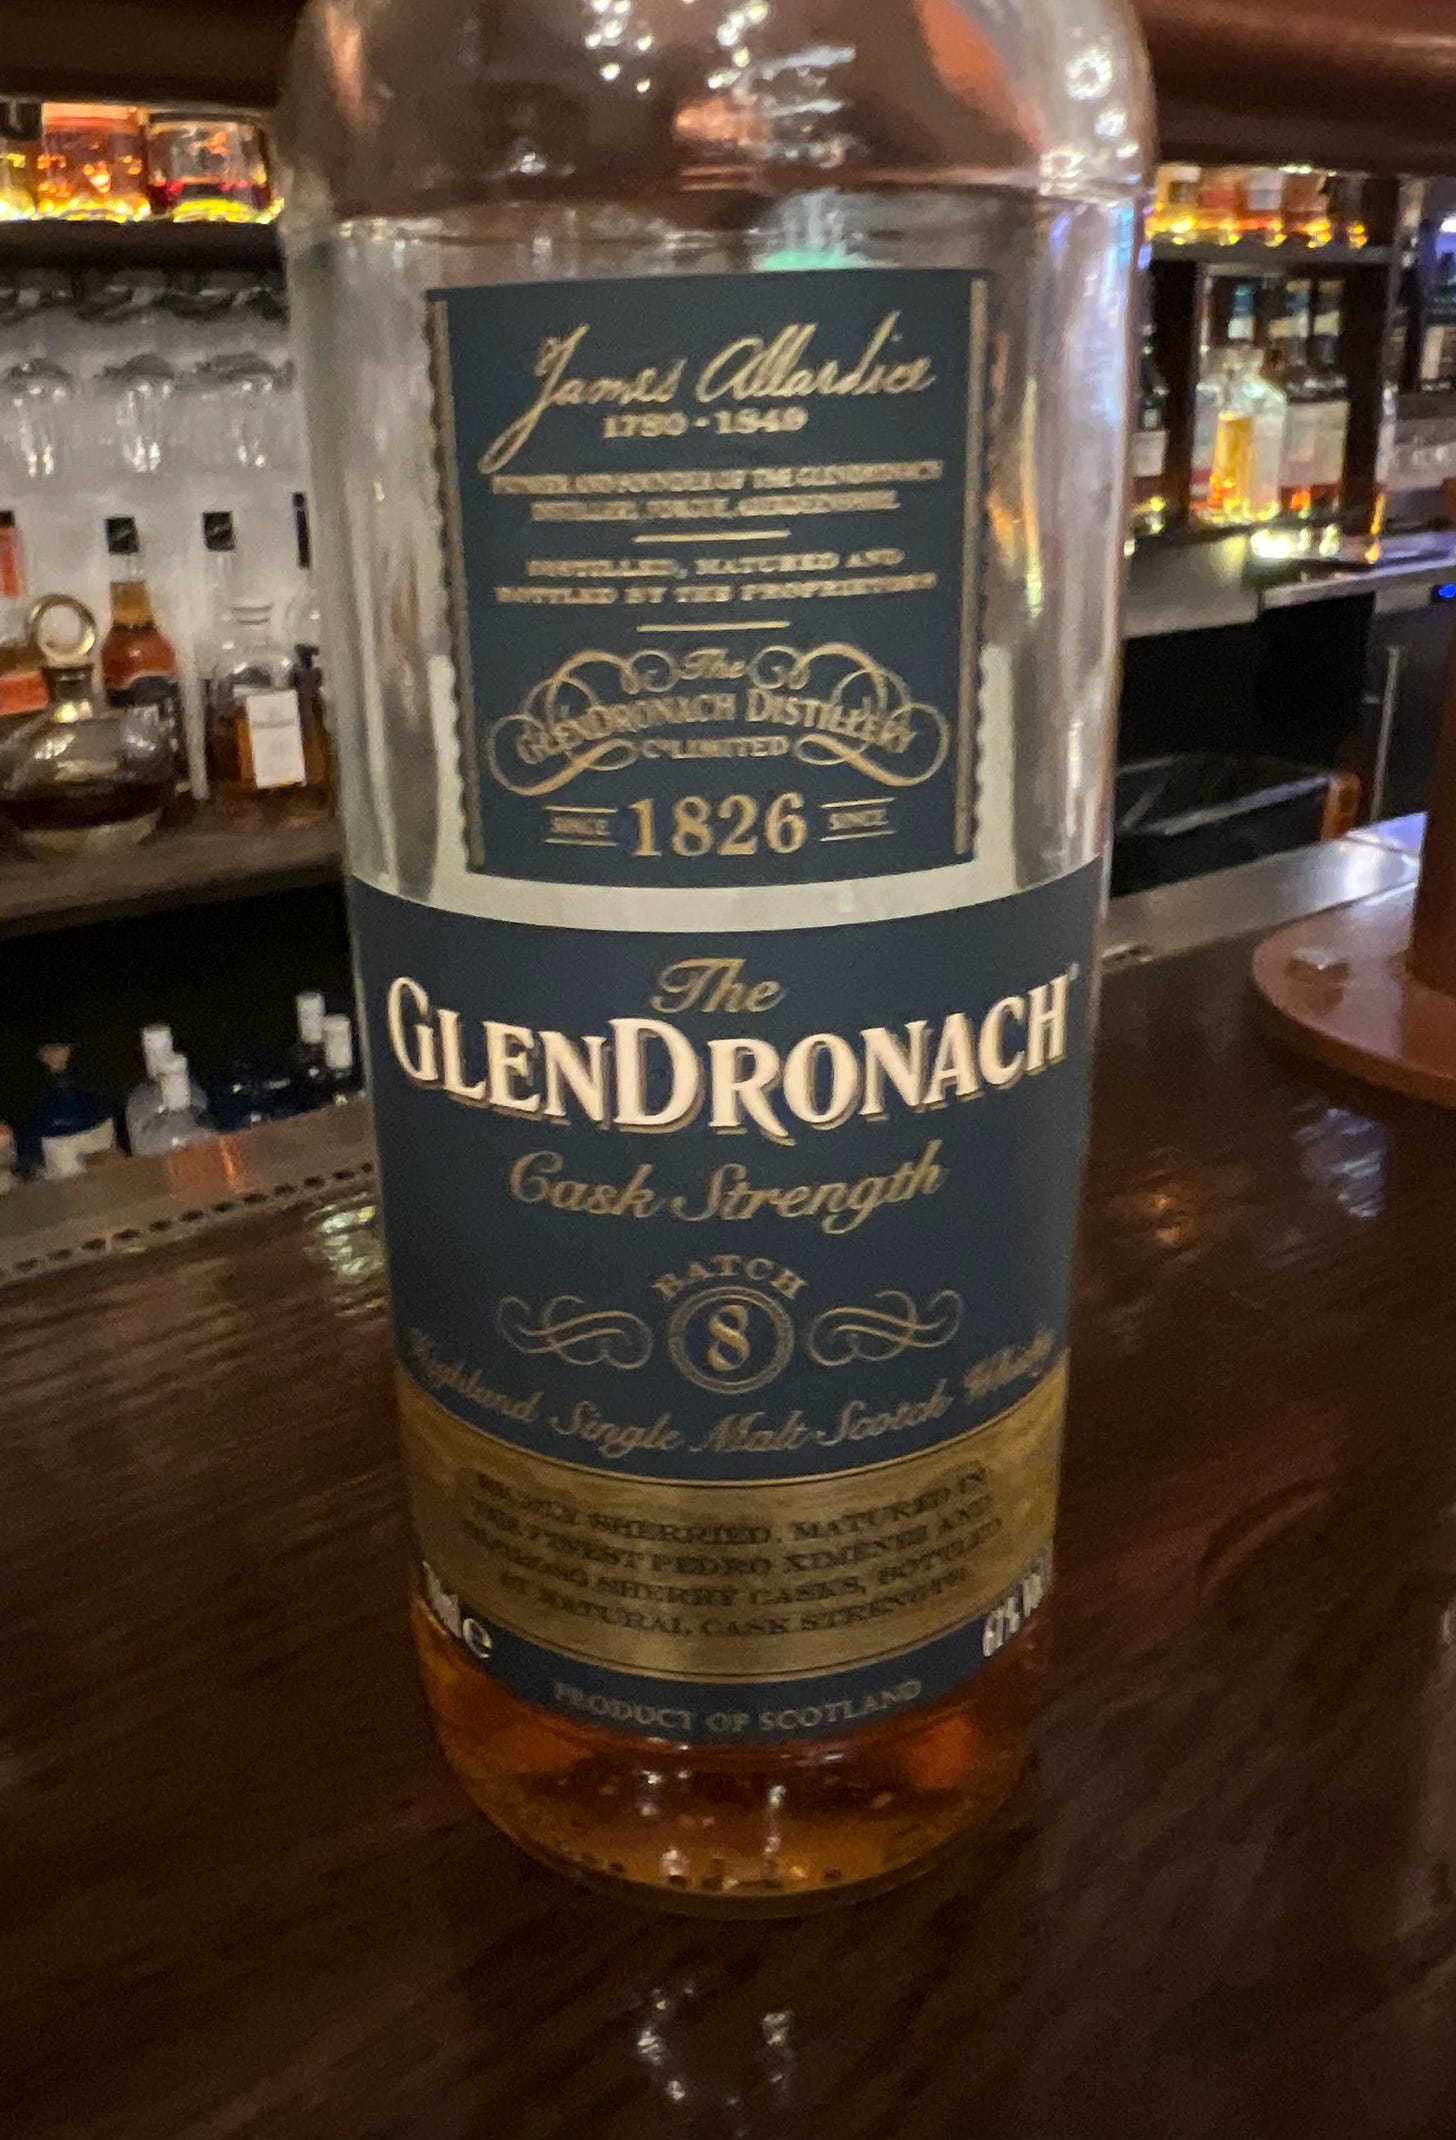 Bottle of The Glendronach Cask Strength Batch 8 whisky